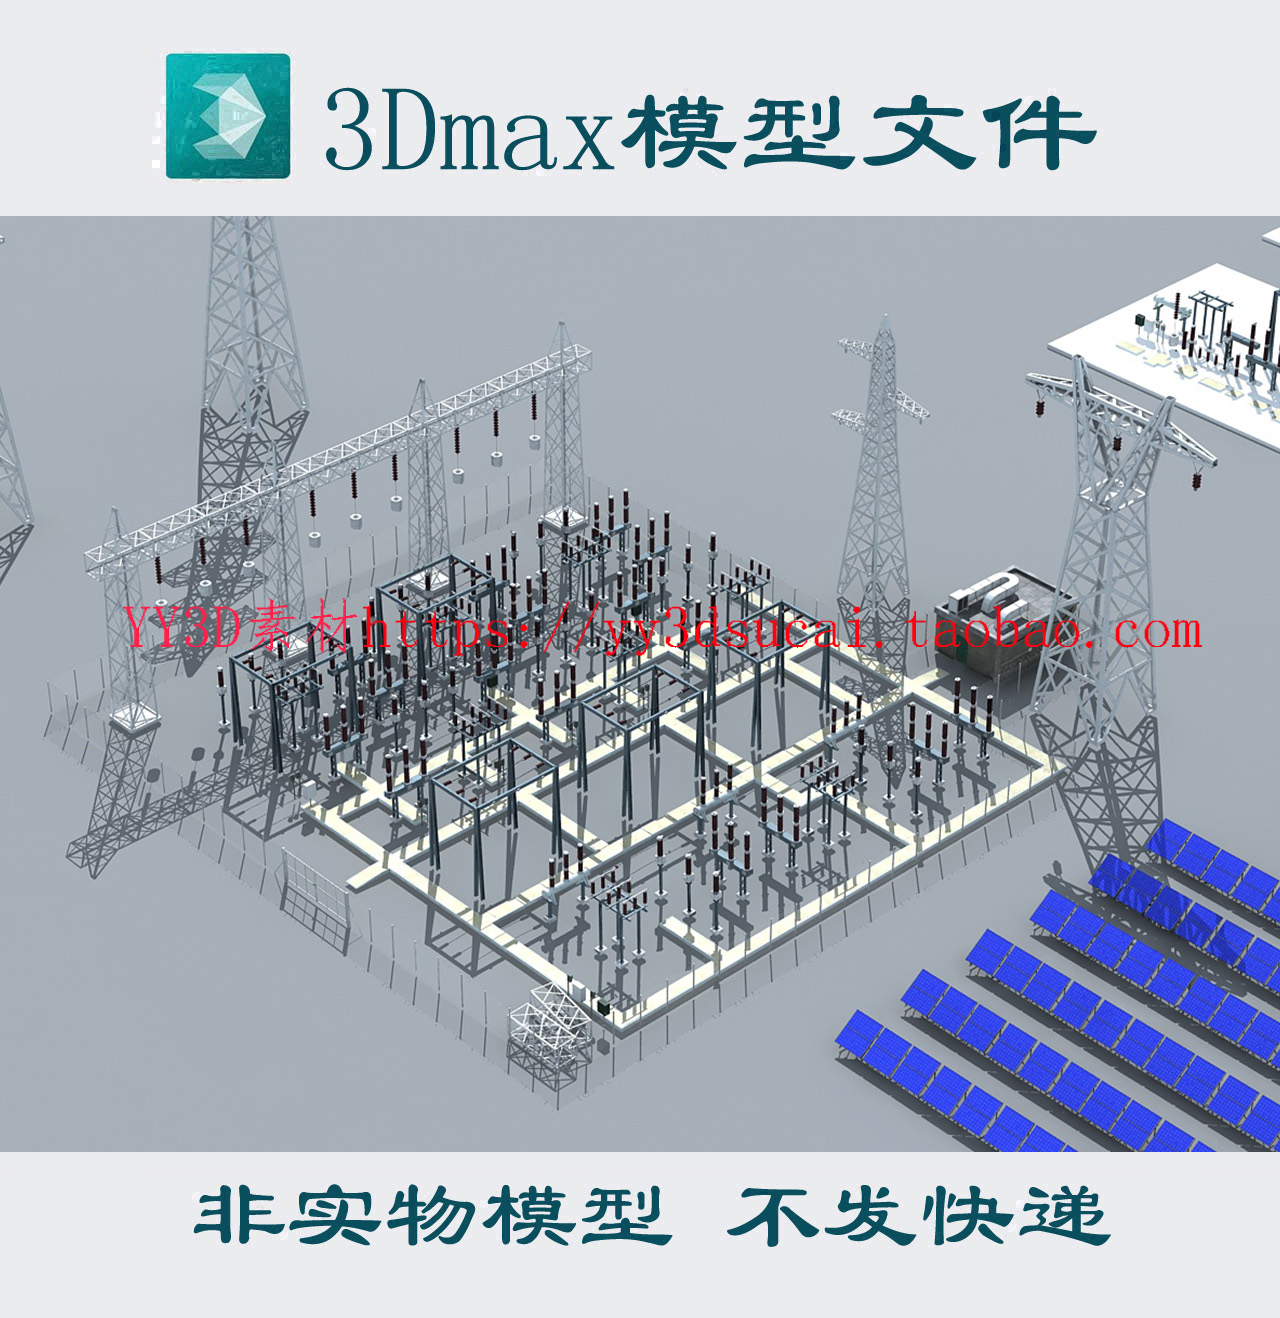 变电设备3dmax模型太阳能光伏板3d模型obj风力发电机高压电塔fbx